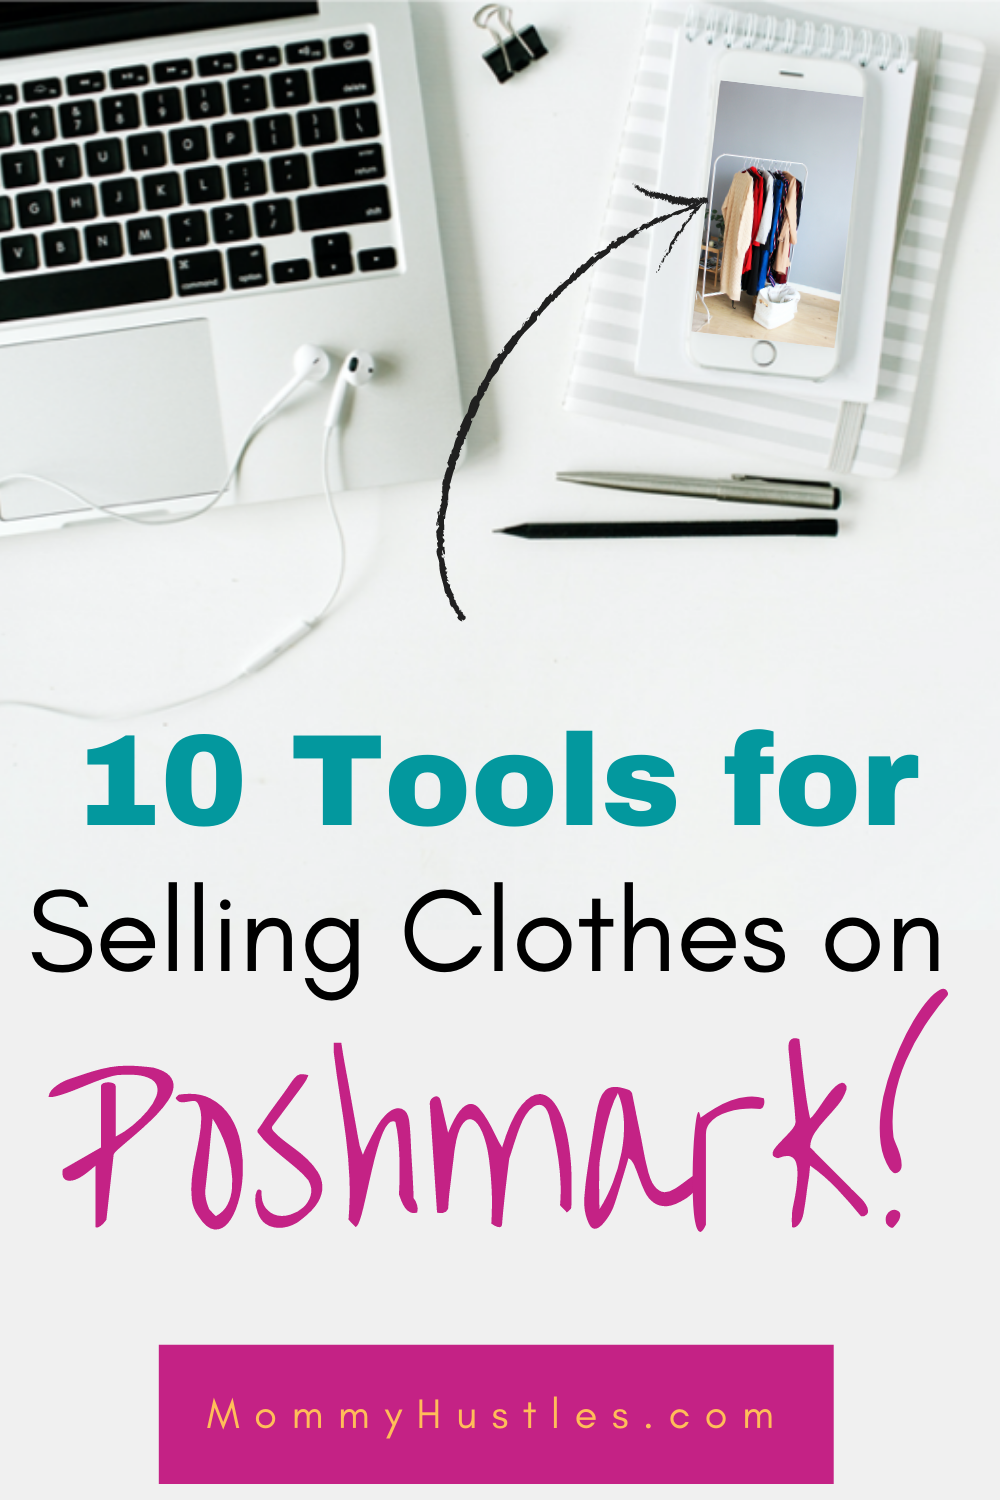 10 Tools for Selling on Poshmark - MommyHustles.com